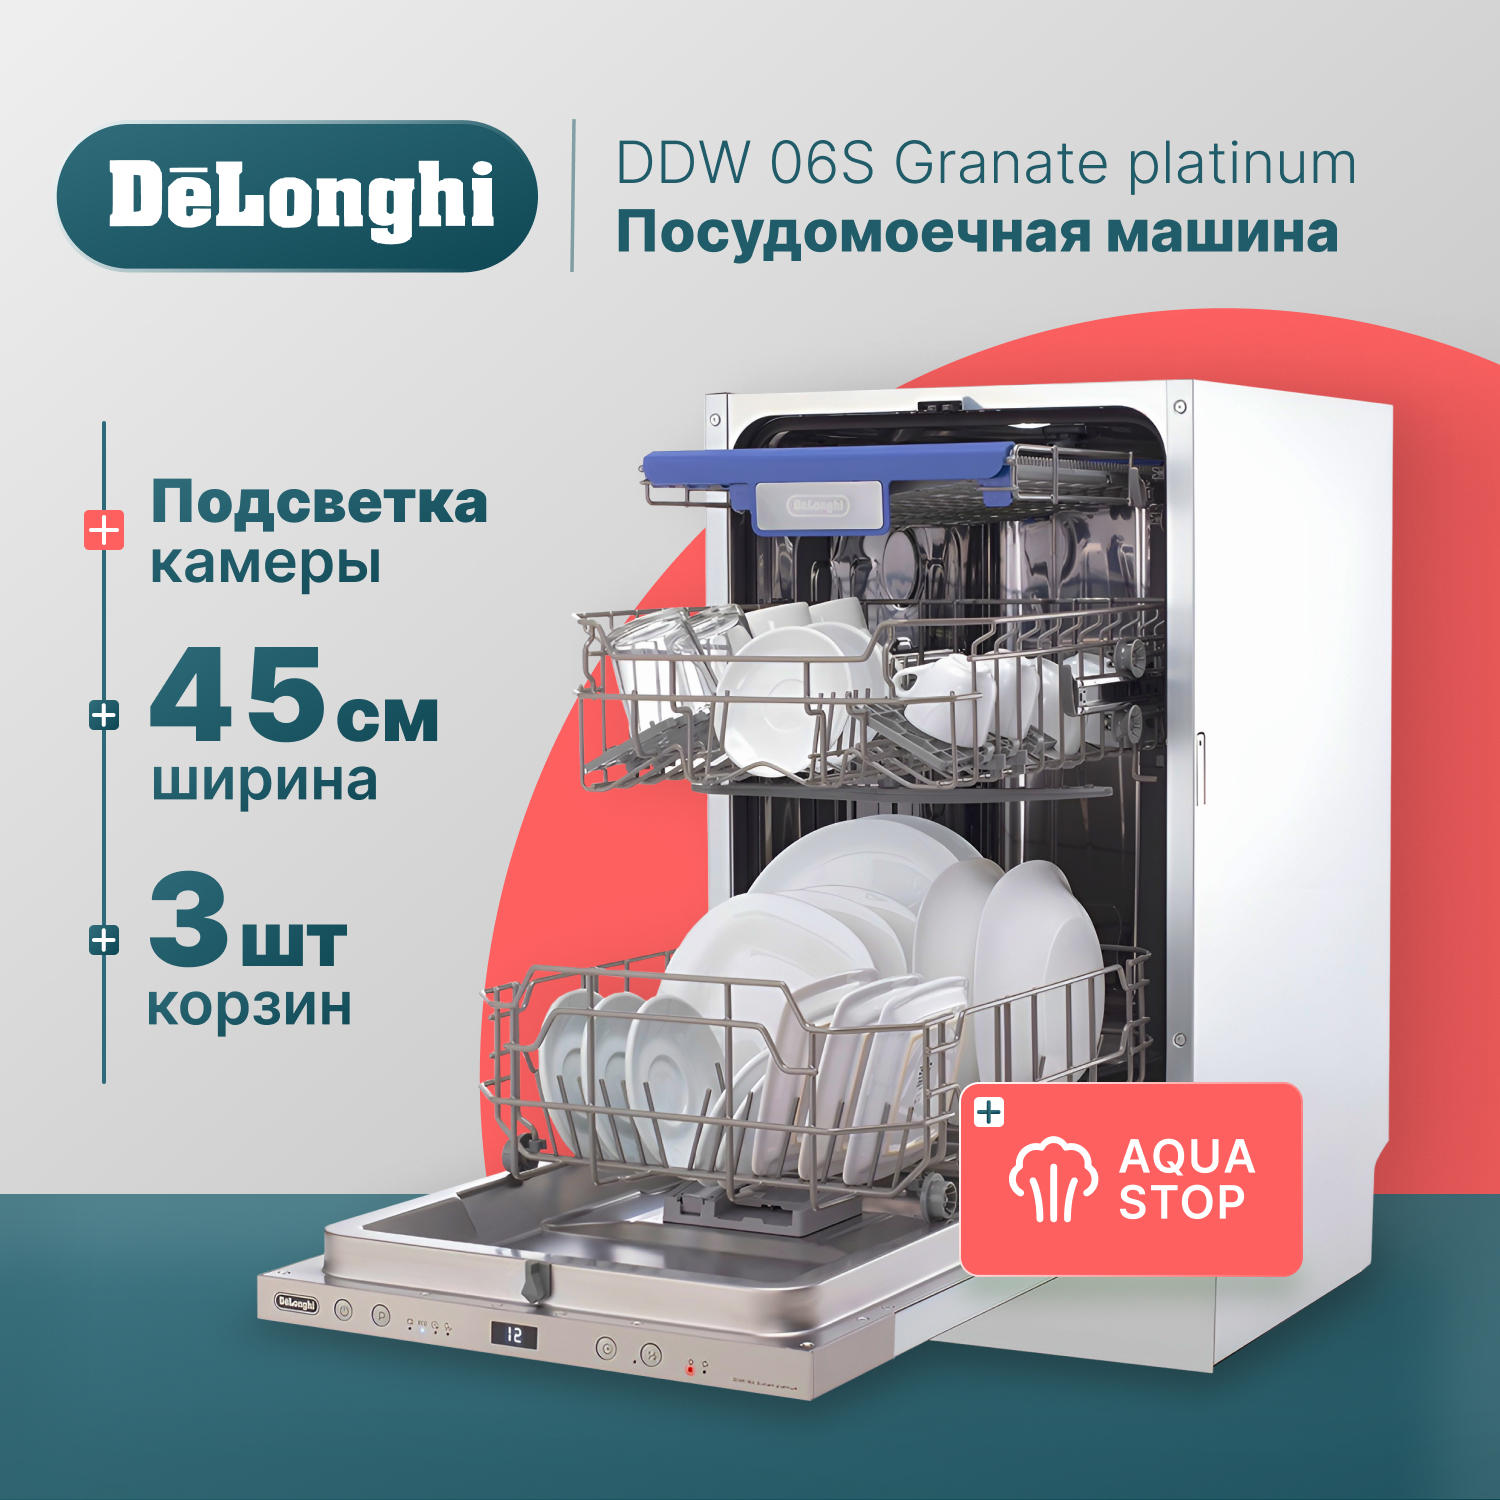 Встраиваемая посудомоечная машина Delonghi DDW06S Granate platinum встраиваемая посудомоечная машина delonghi ddw06s basilia